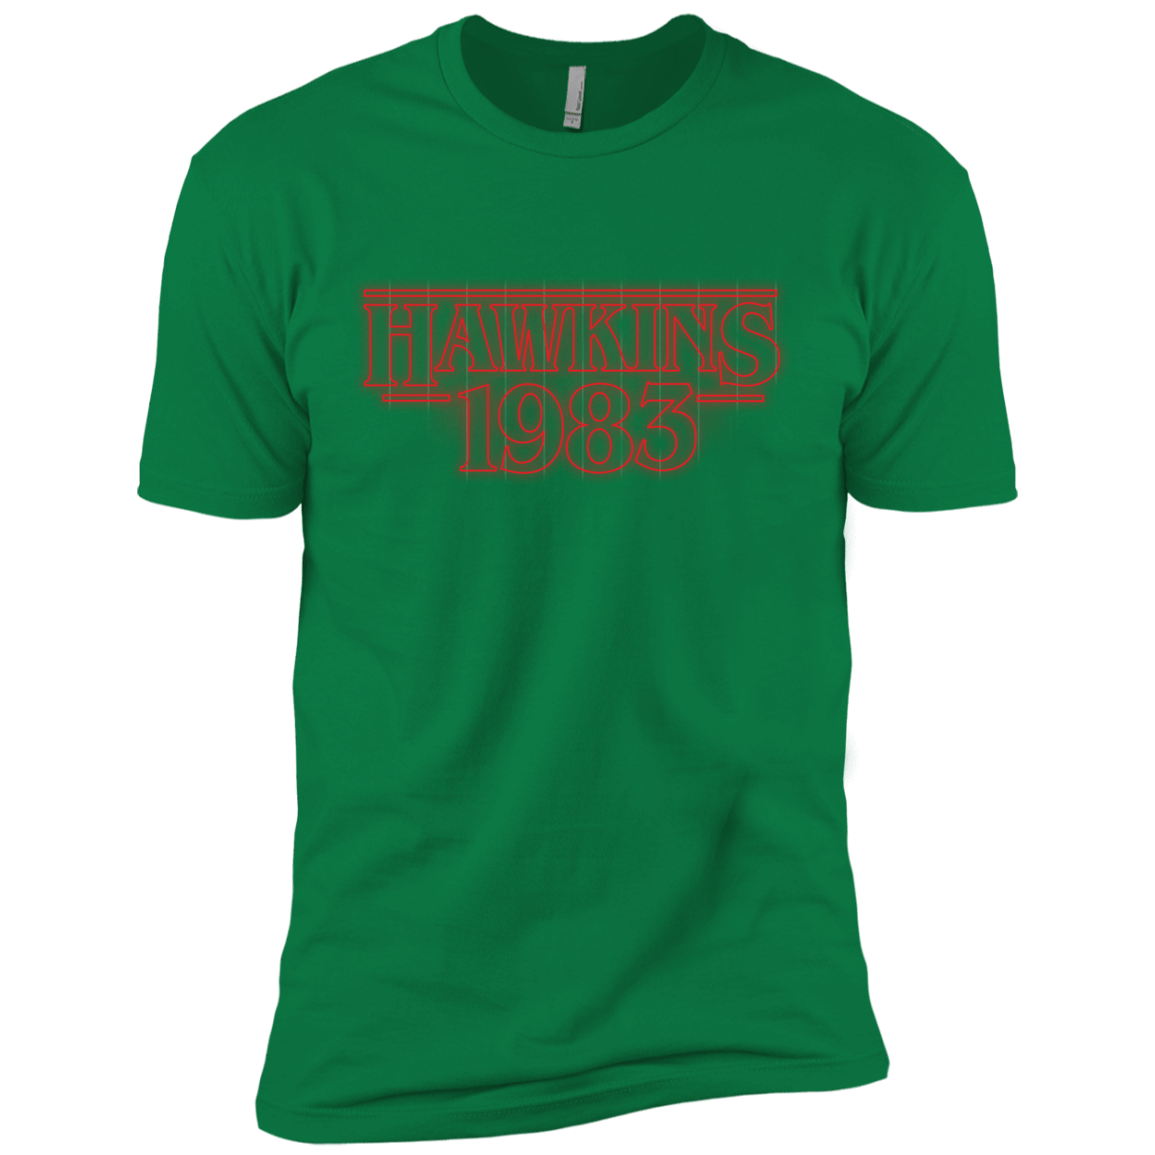 T-Shirts Kelly Green / X-Small Hawkins 83 Men's Premium T-Shirt